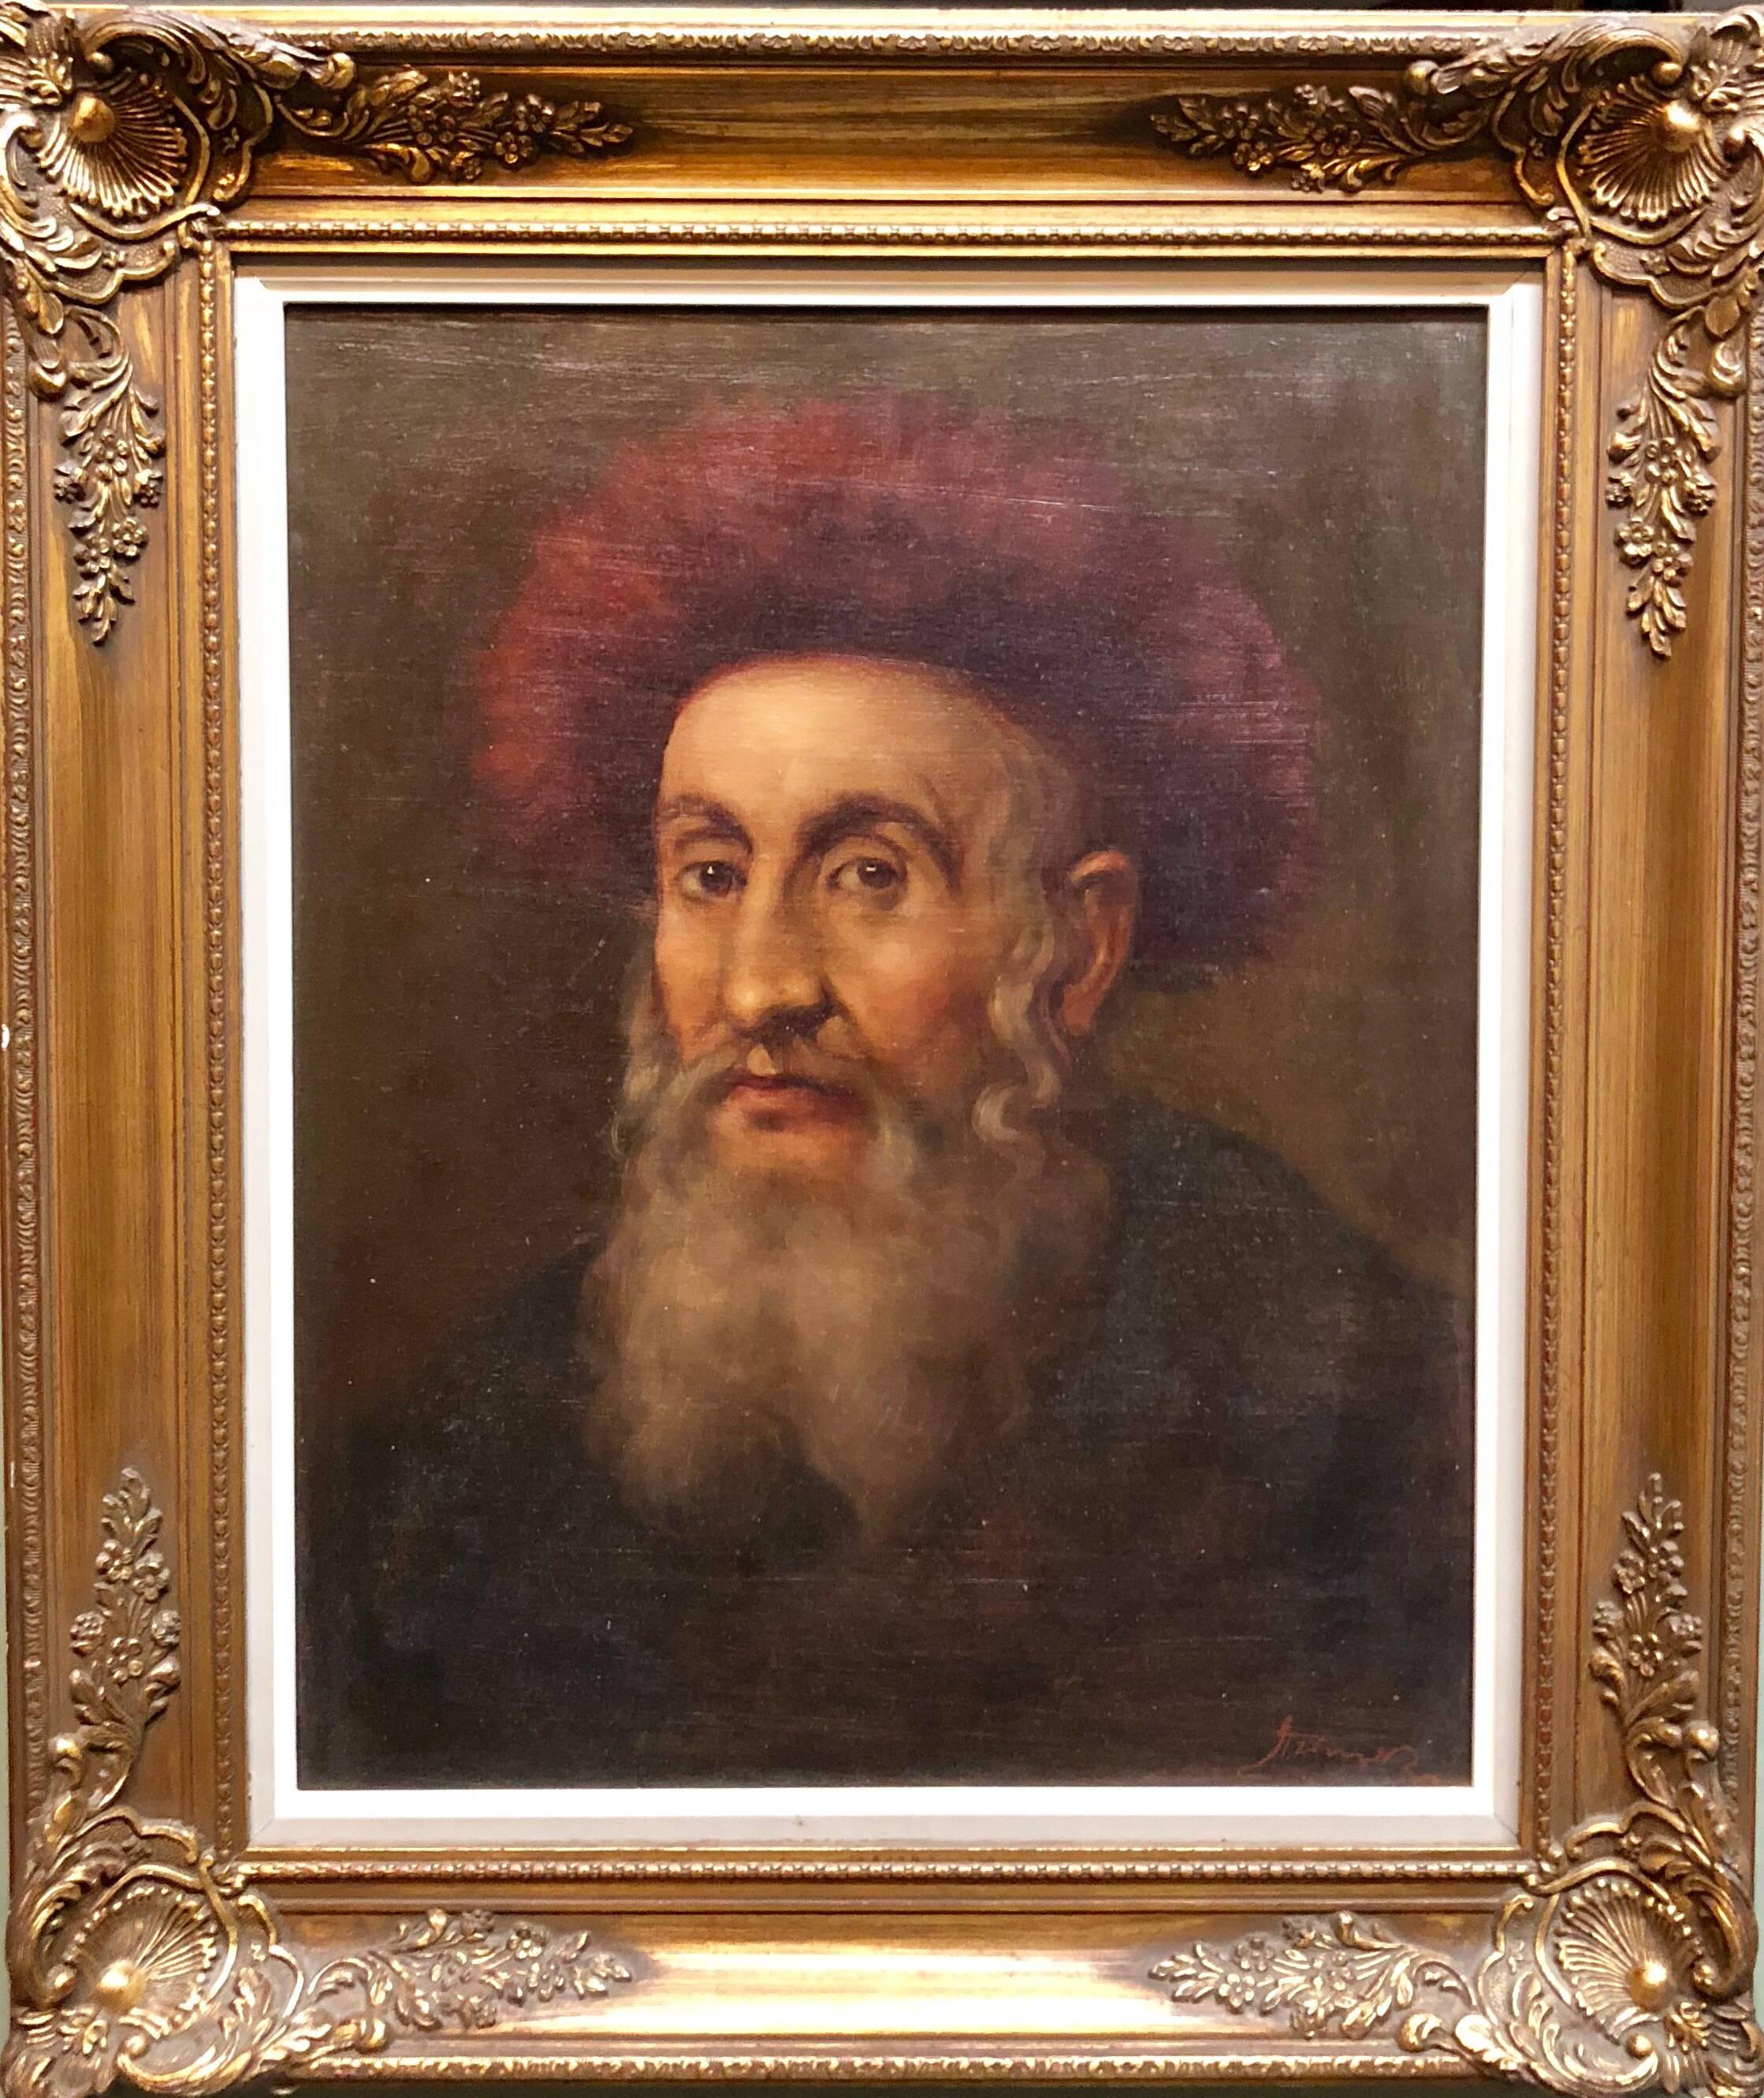  Judaica „The Rebbe“ Europäisches Hasidic- Rabbiner-Ölgemälde, Judaica (Realismus), Painting, von Unknown